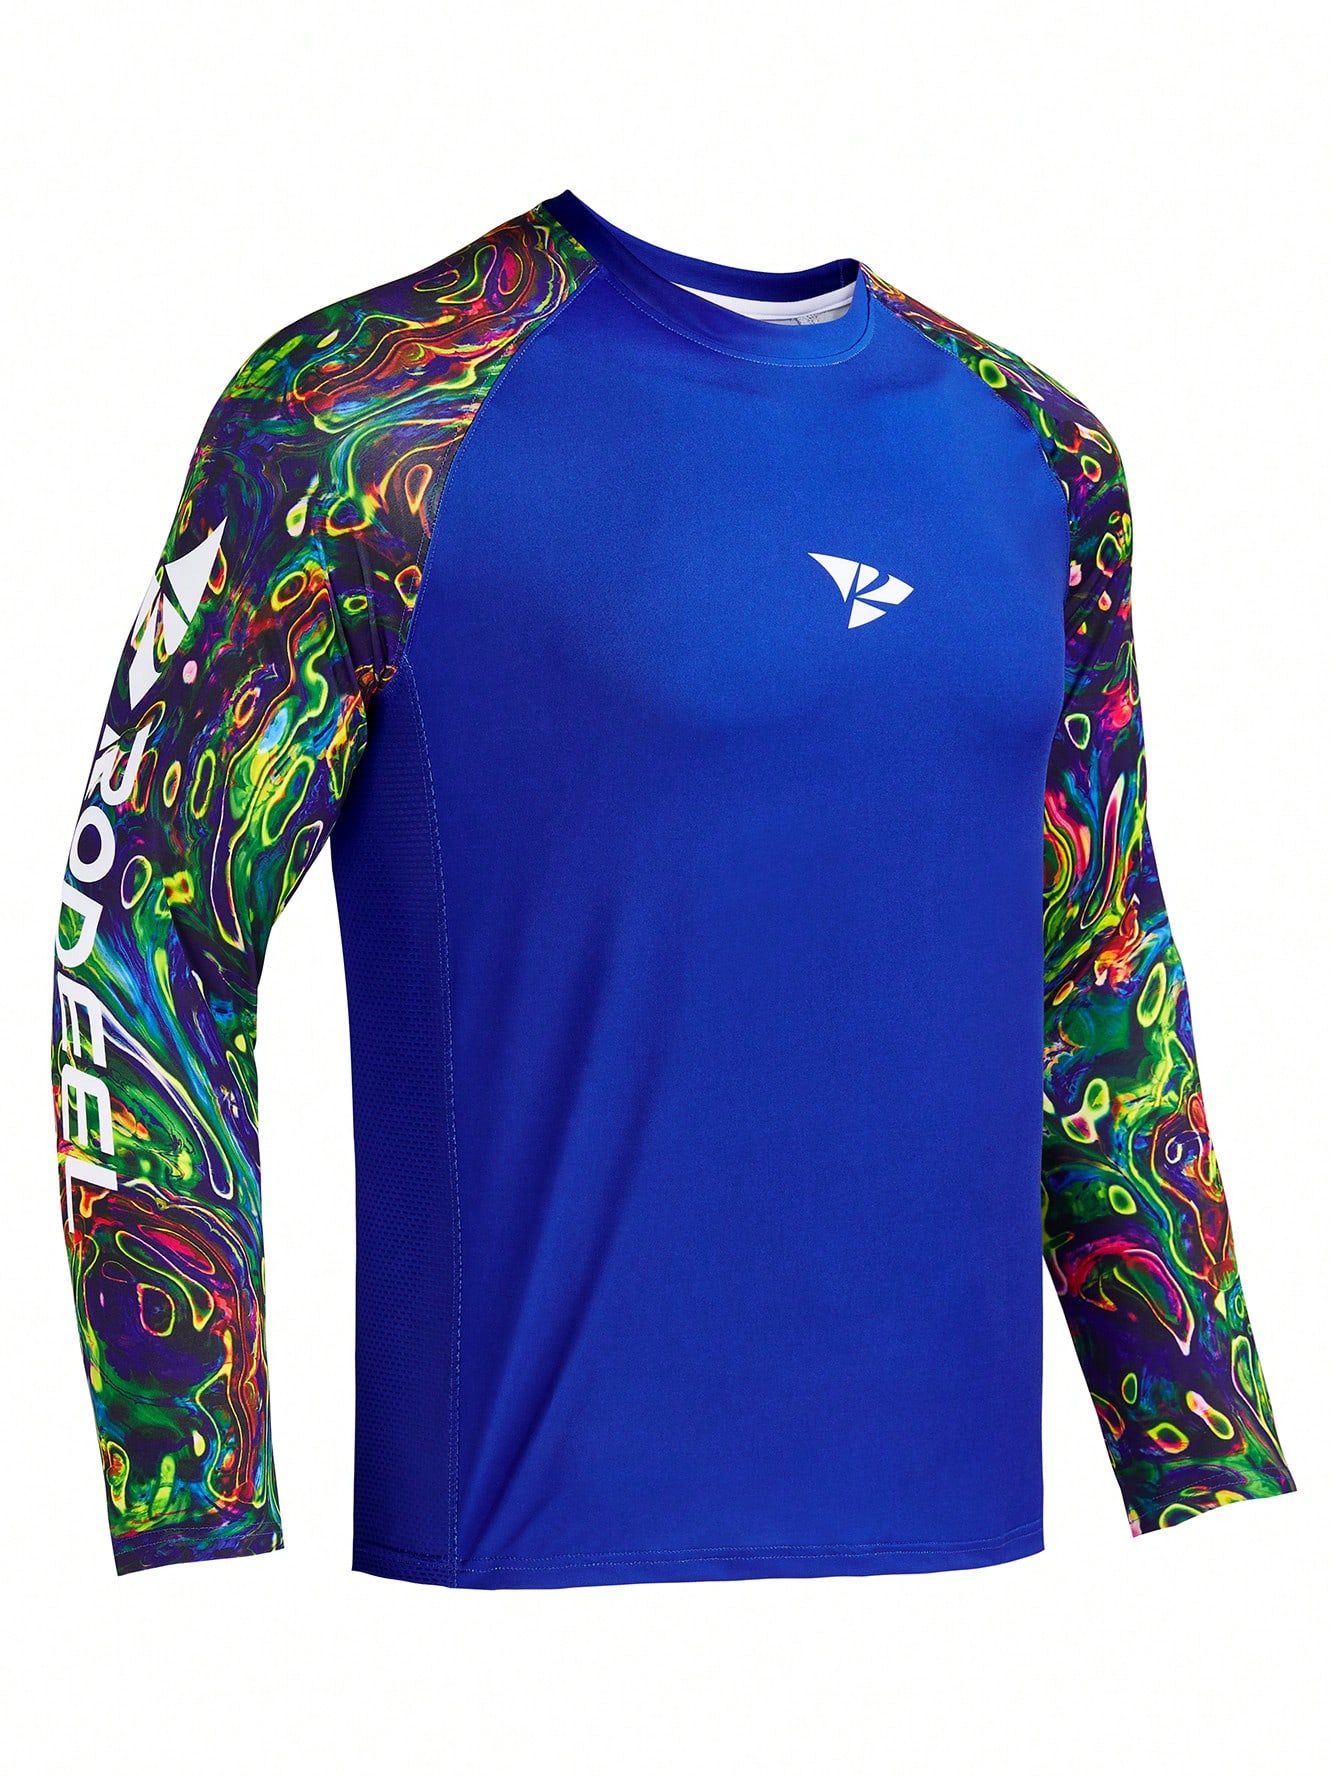 RODEEL Мужская рубашка с защитой от солнца, темно-синий спортивная одежда с открытым большим пальцем летние охлаждающие рукава для баскетбола нарукавная спортивная защита от солнца